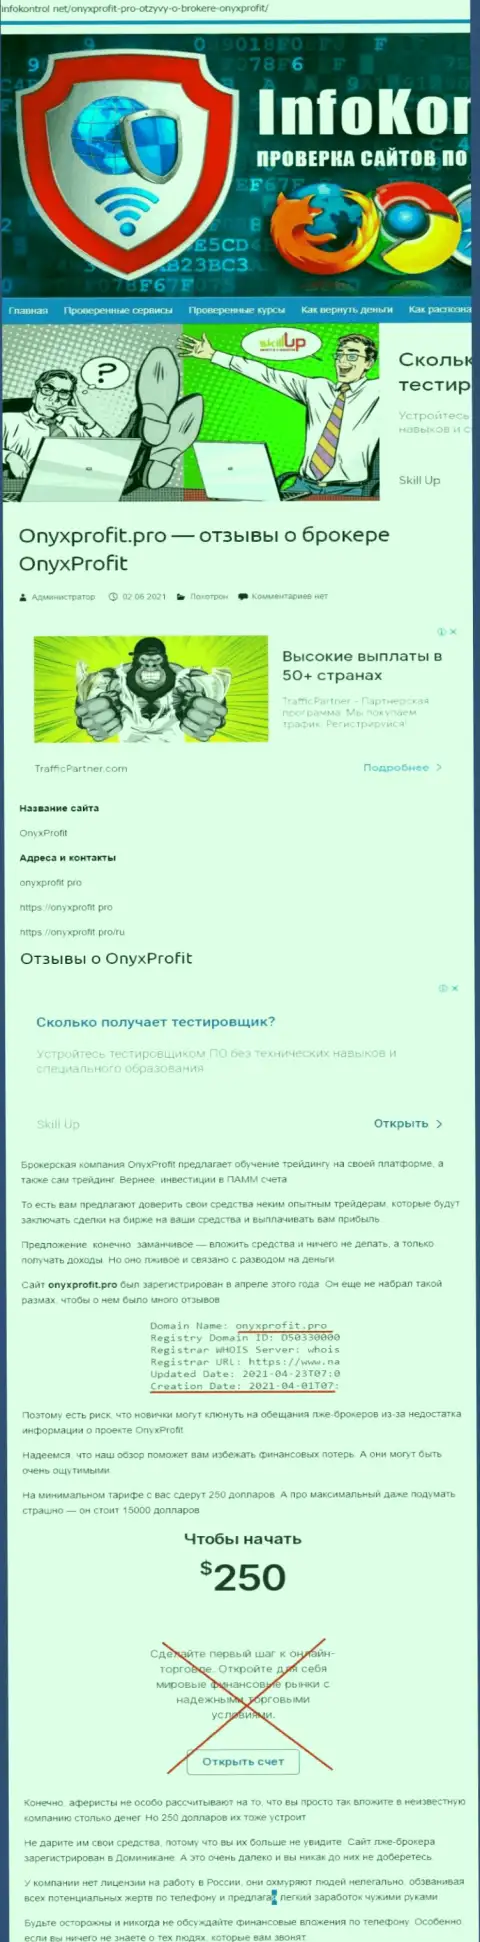 OnyxProfit - это развод, на который вестись слишком рискованно (обзор мошеннических комбинаций компании)